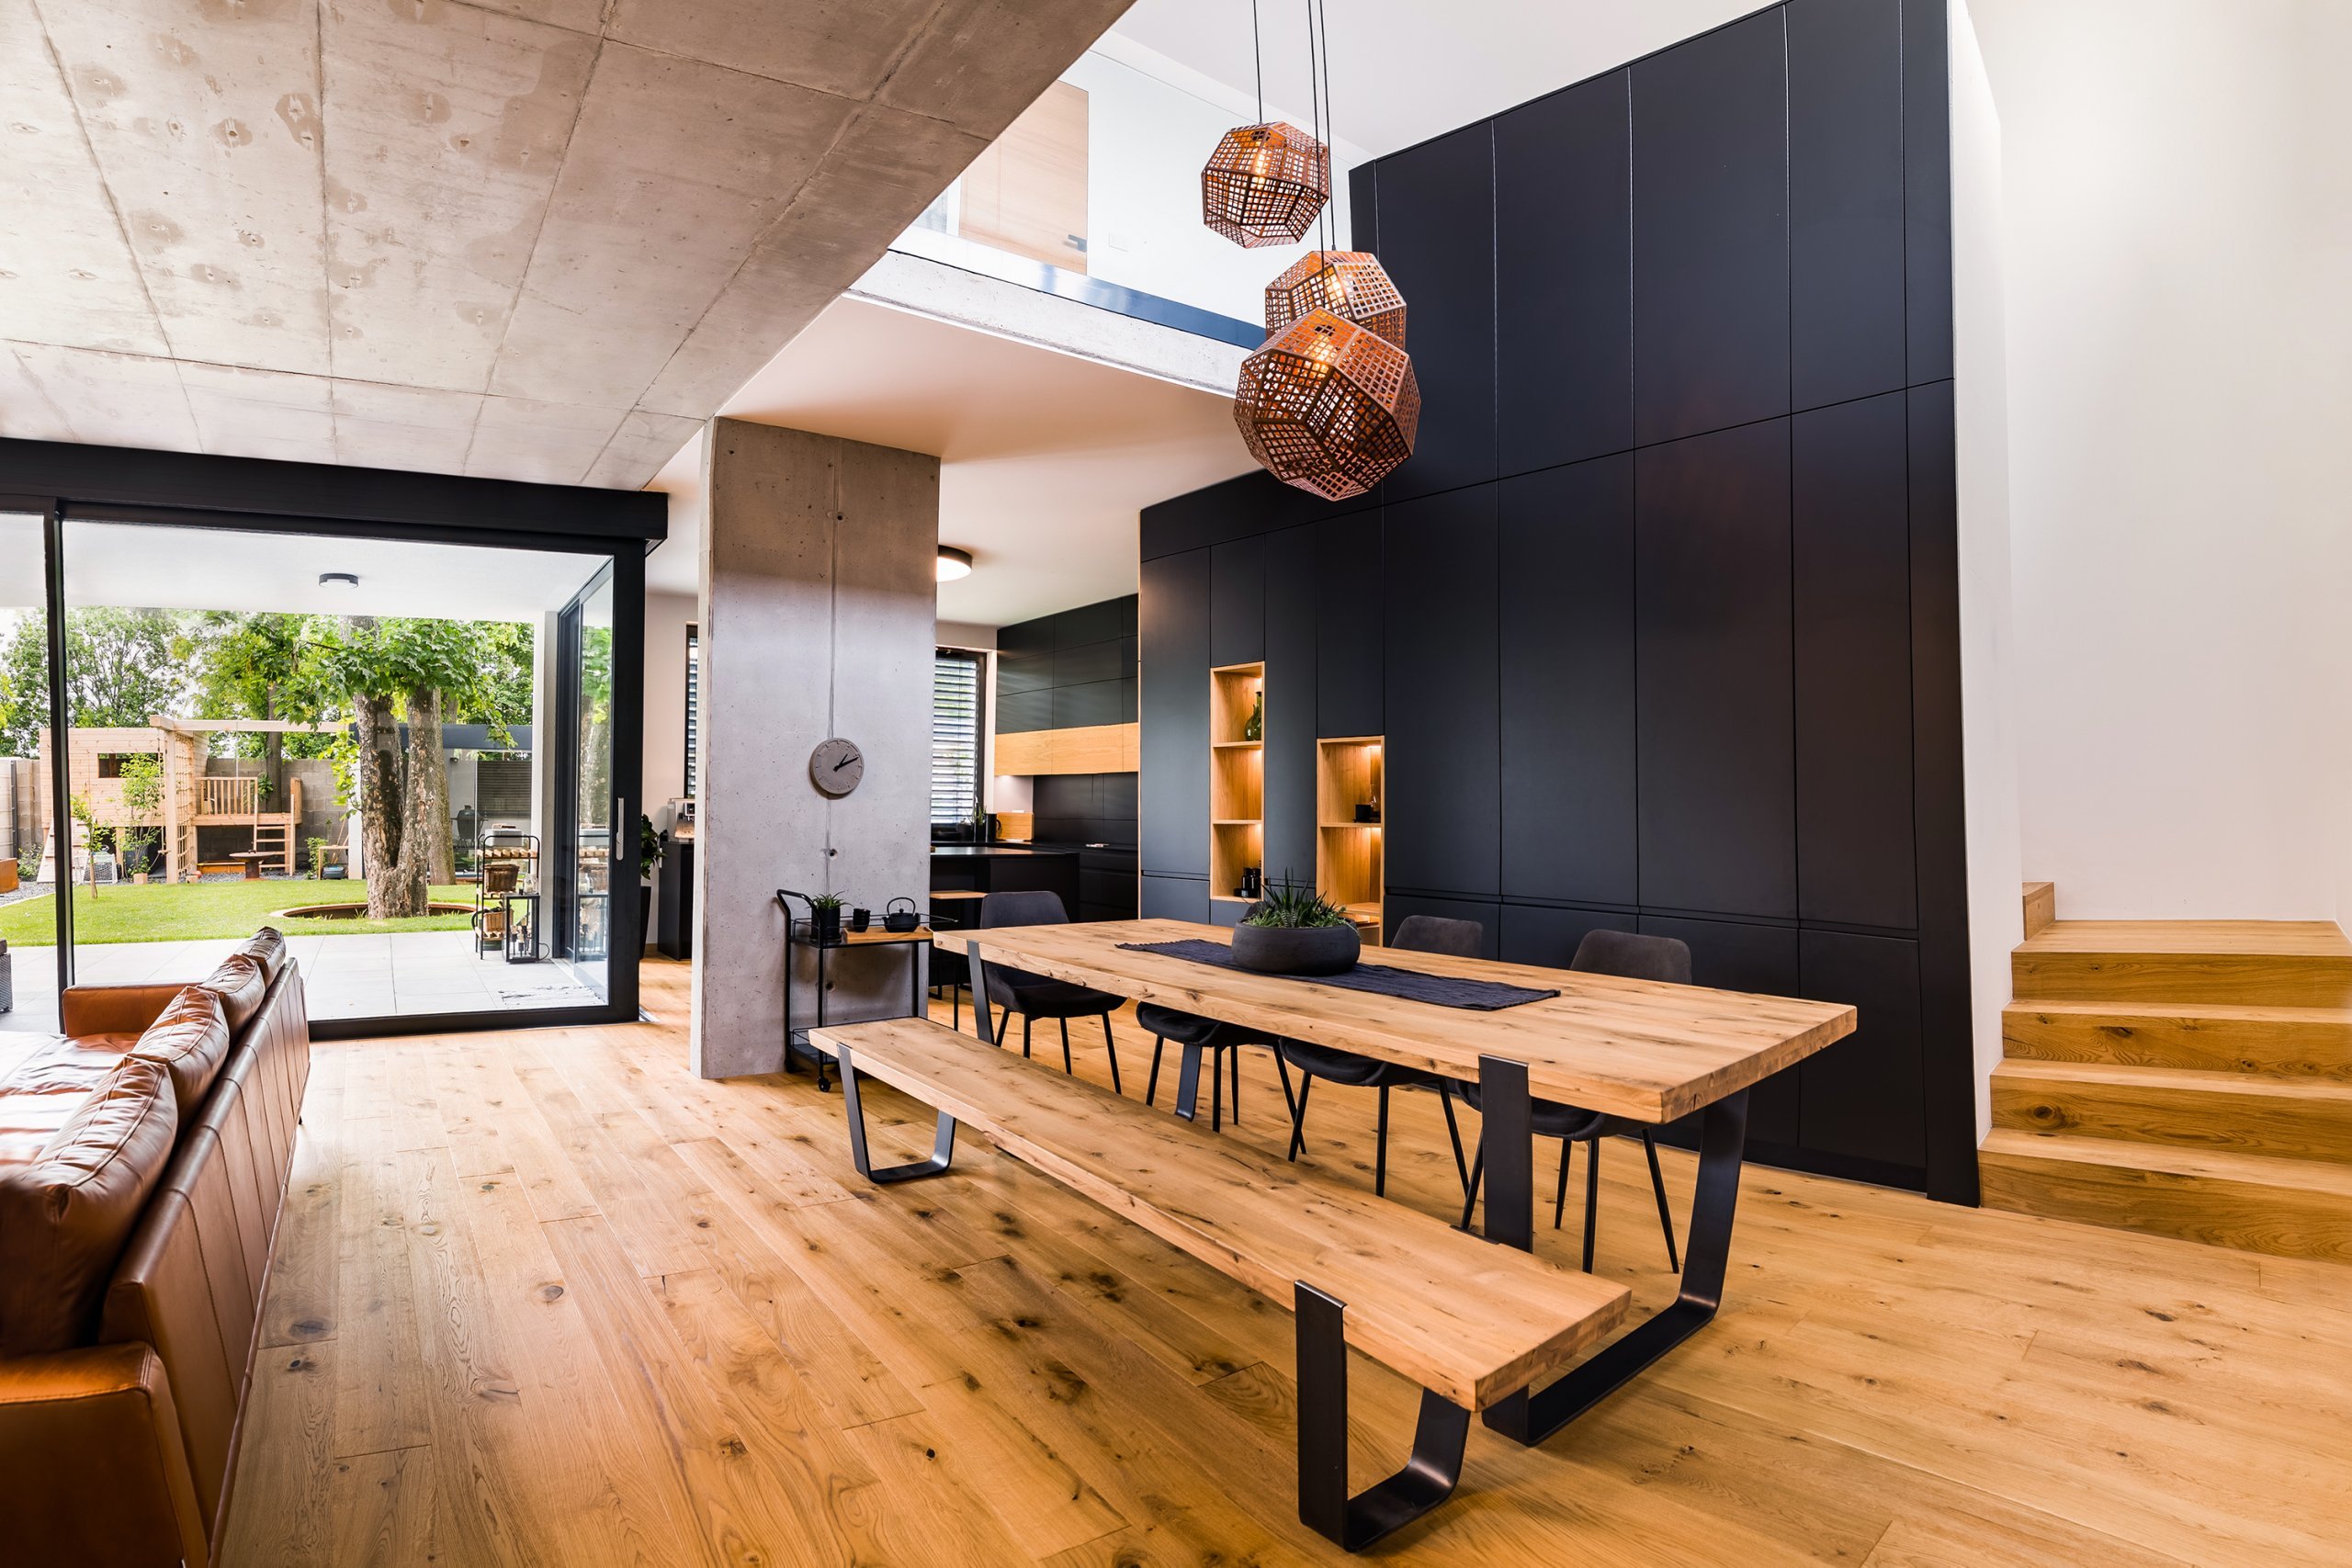 Pocit vyjímečnosti jídelny dodává velký stůl s dřevěnou tabulí a otevřený prostor, který navazuje na obývací místnost.